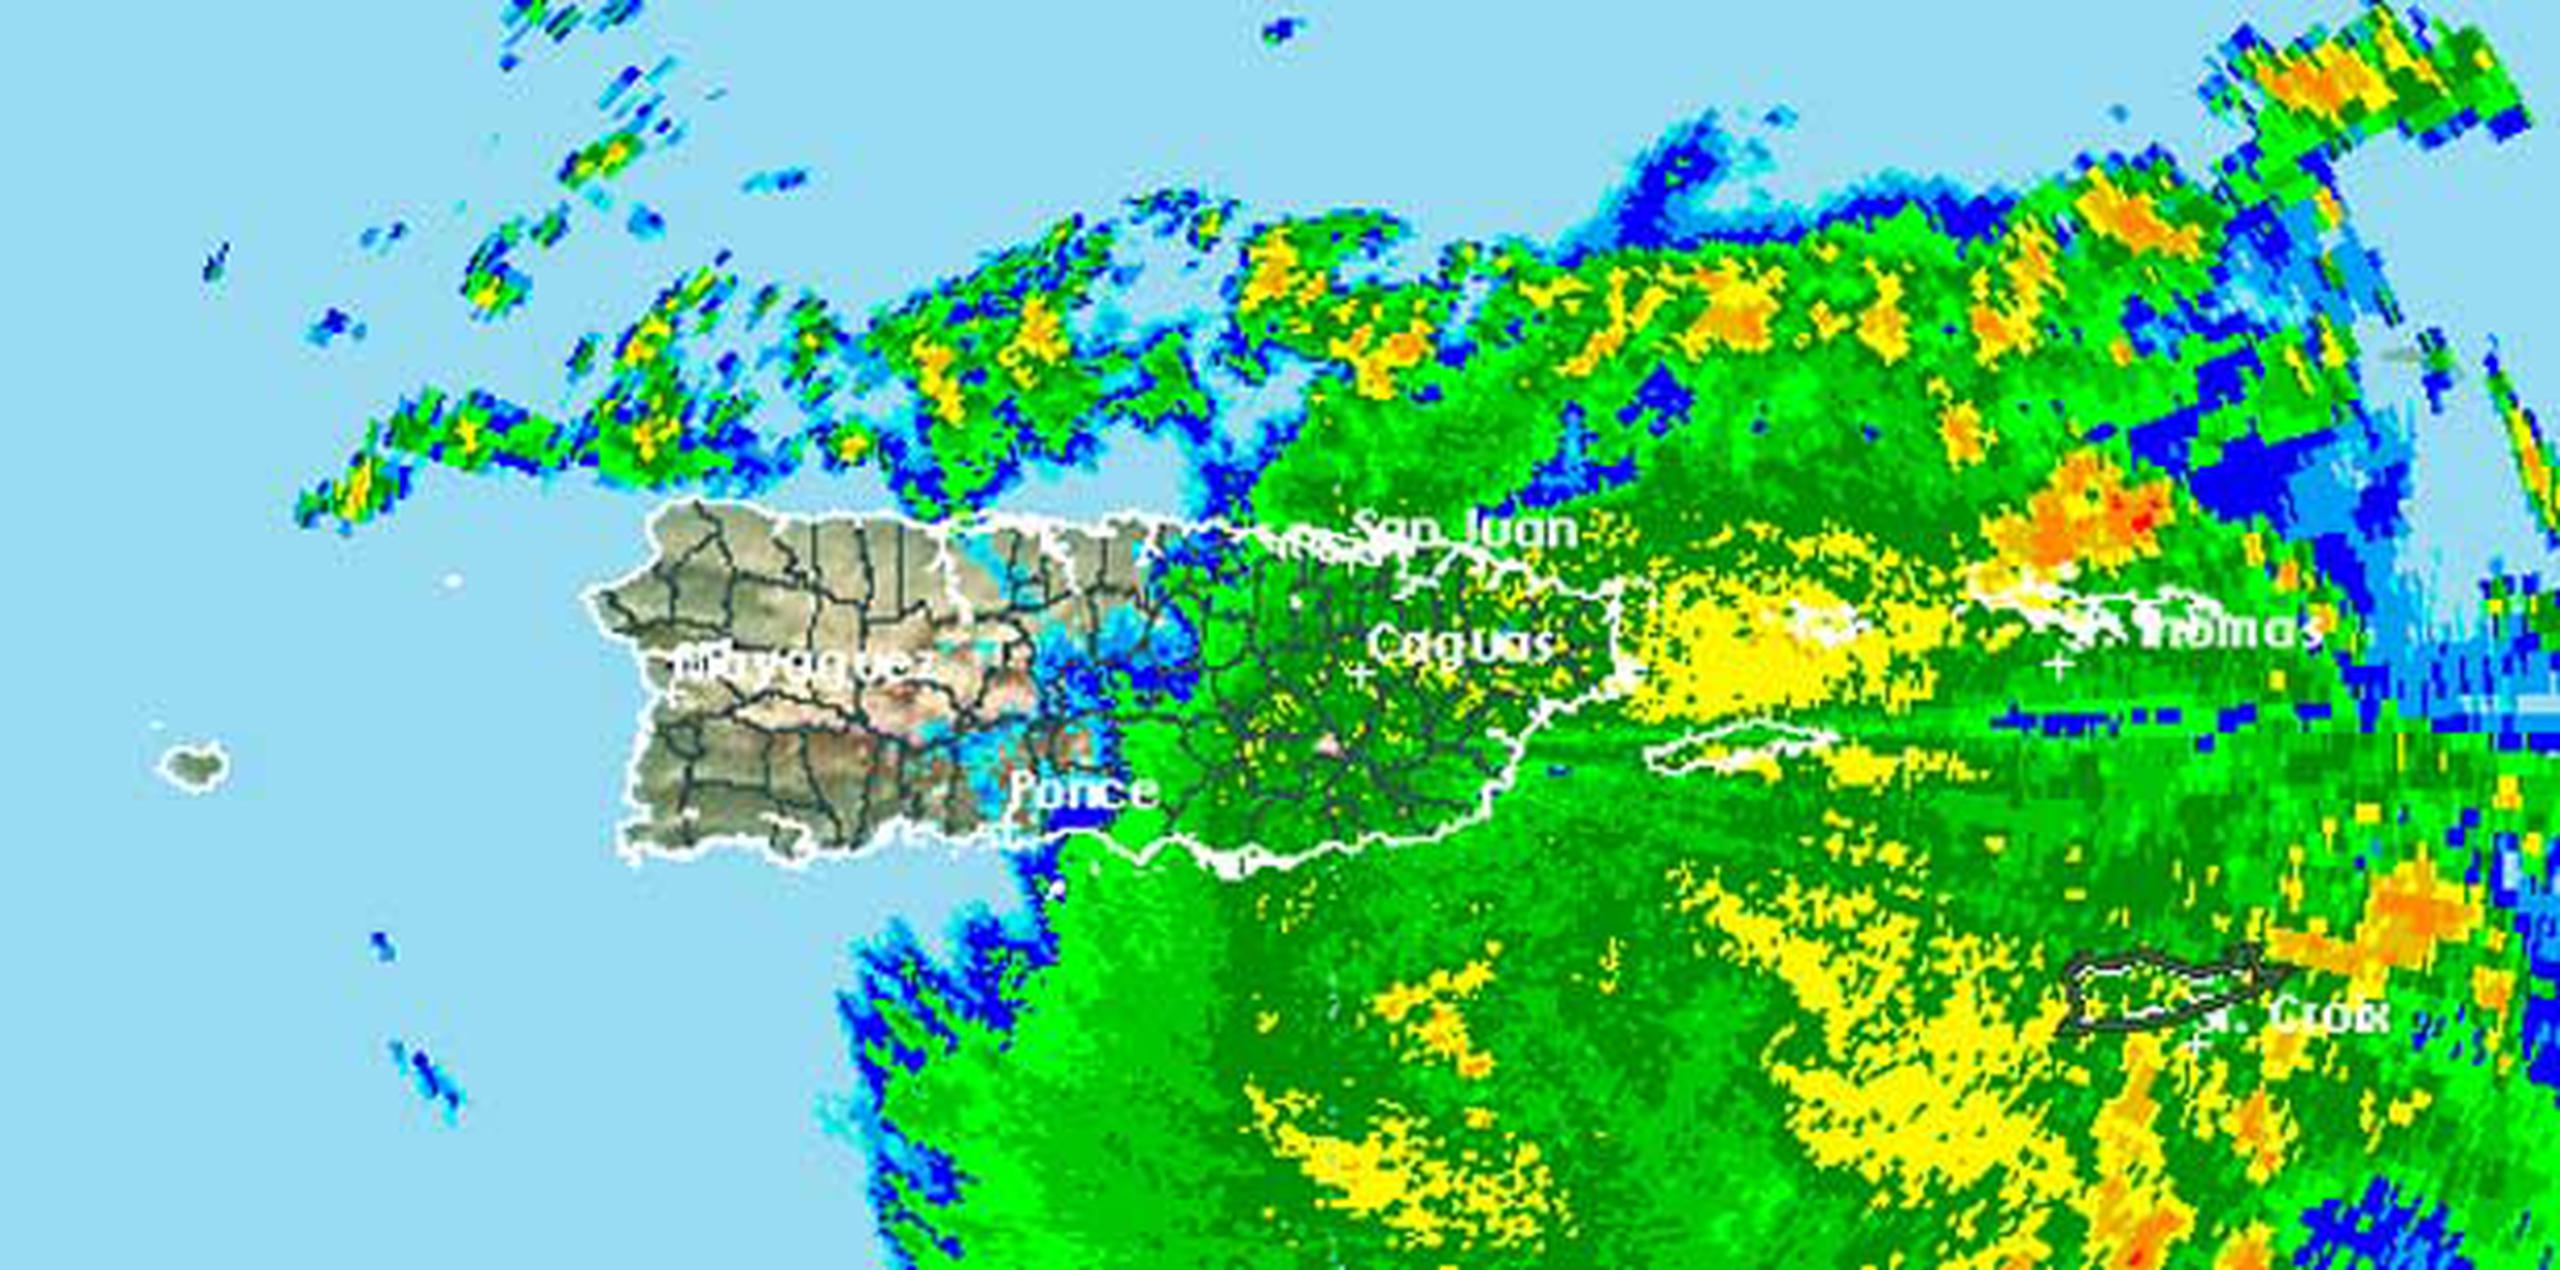 La costa oeste de Puerto Rico, demarcada con una línea imaginaria entre Ponce y Quebradillas hacia Mayagüez, sentirá los vientos con fuerza de tormenta tropical, quizás con ráfagas de 50 mph. (NOAA)